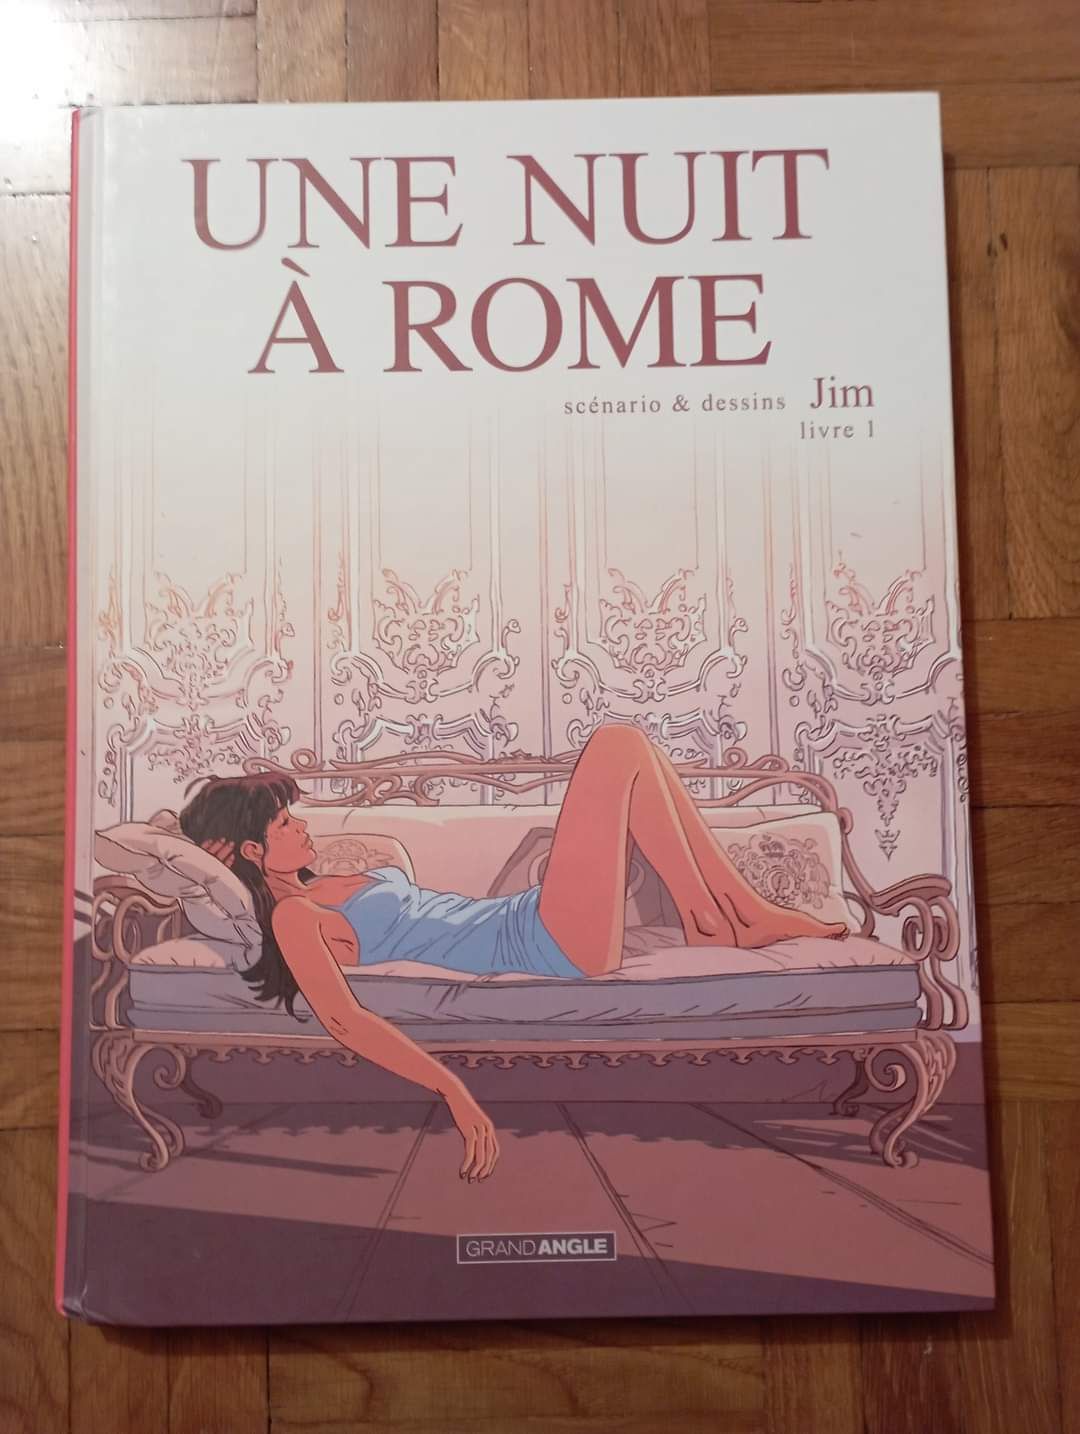 Une nuit à Rome - Volumes 1 e 2
PRIMEIRO CICLO COMPLETO
Jim
Edições fr